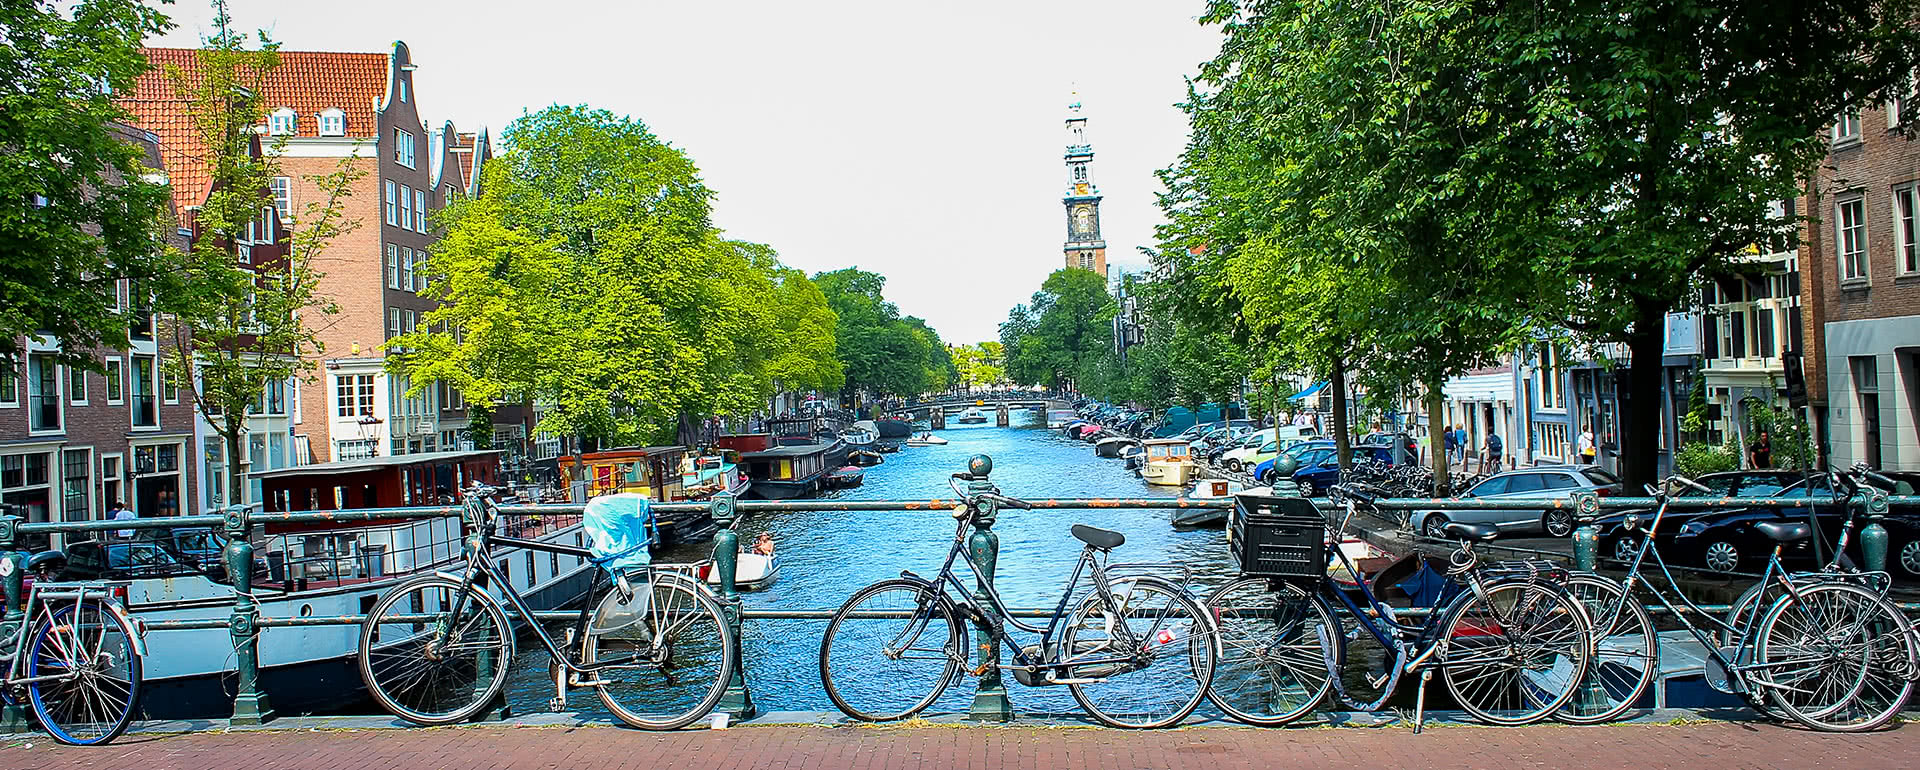 Coverbild von Utrecht